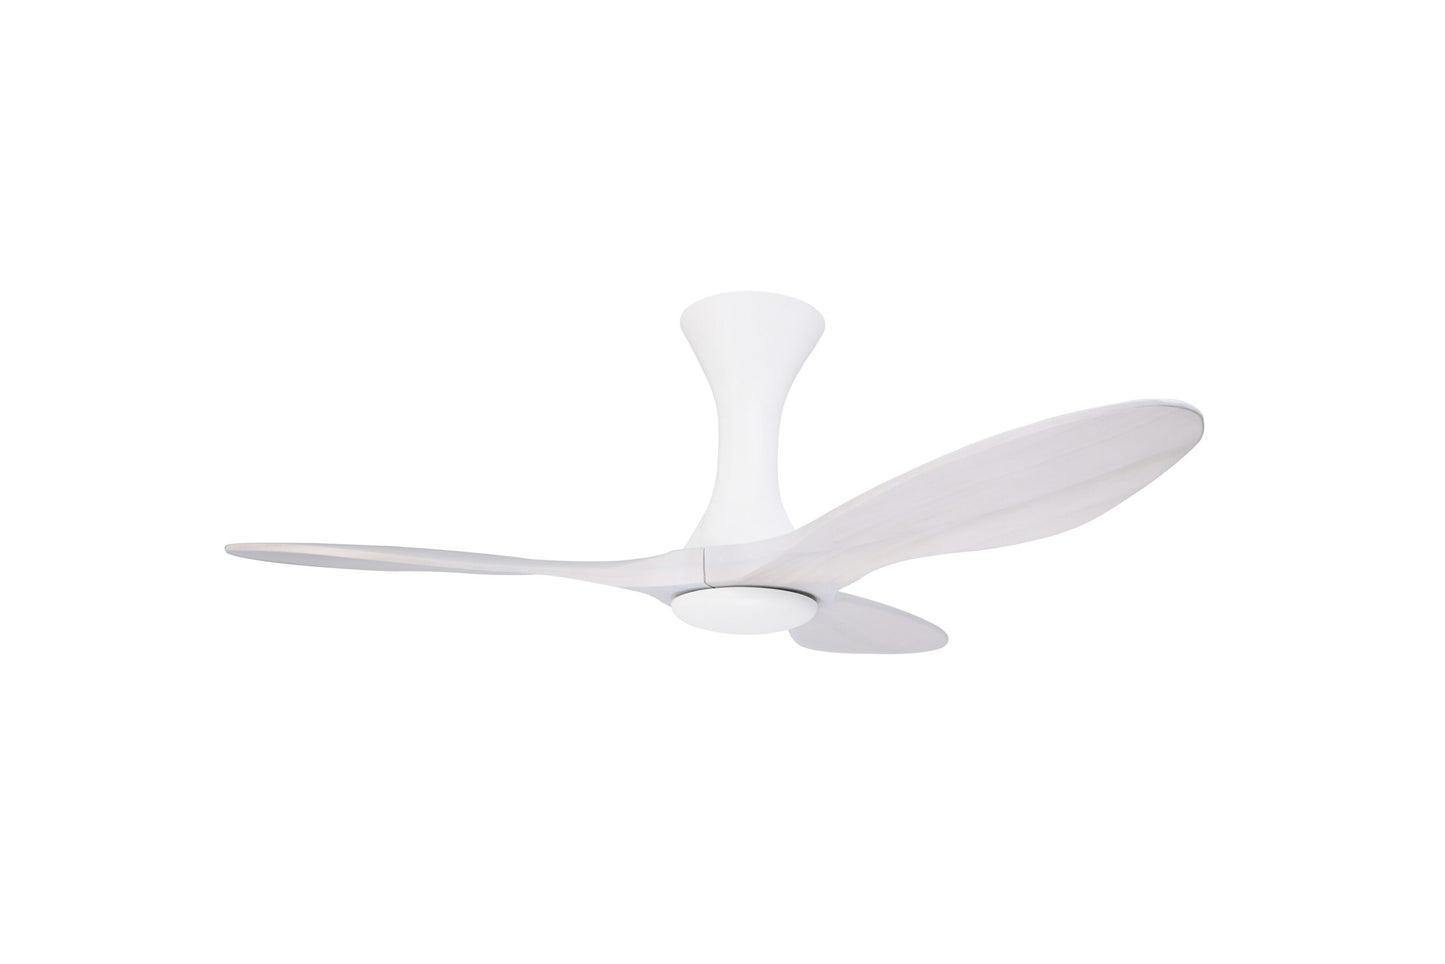 Eco-Airx I Series (White)